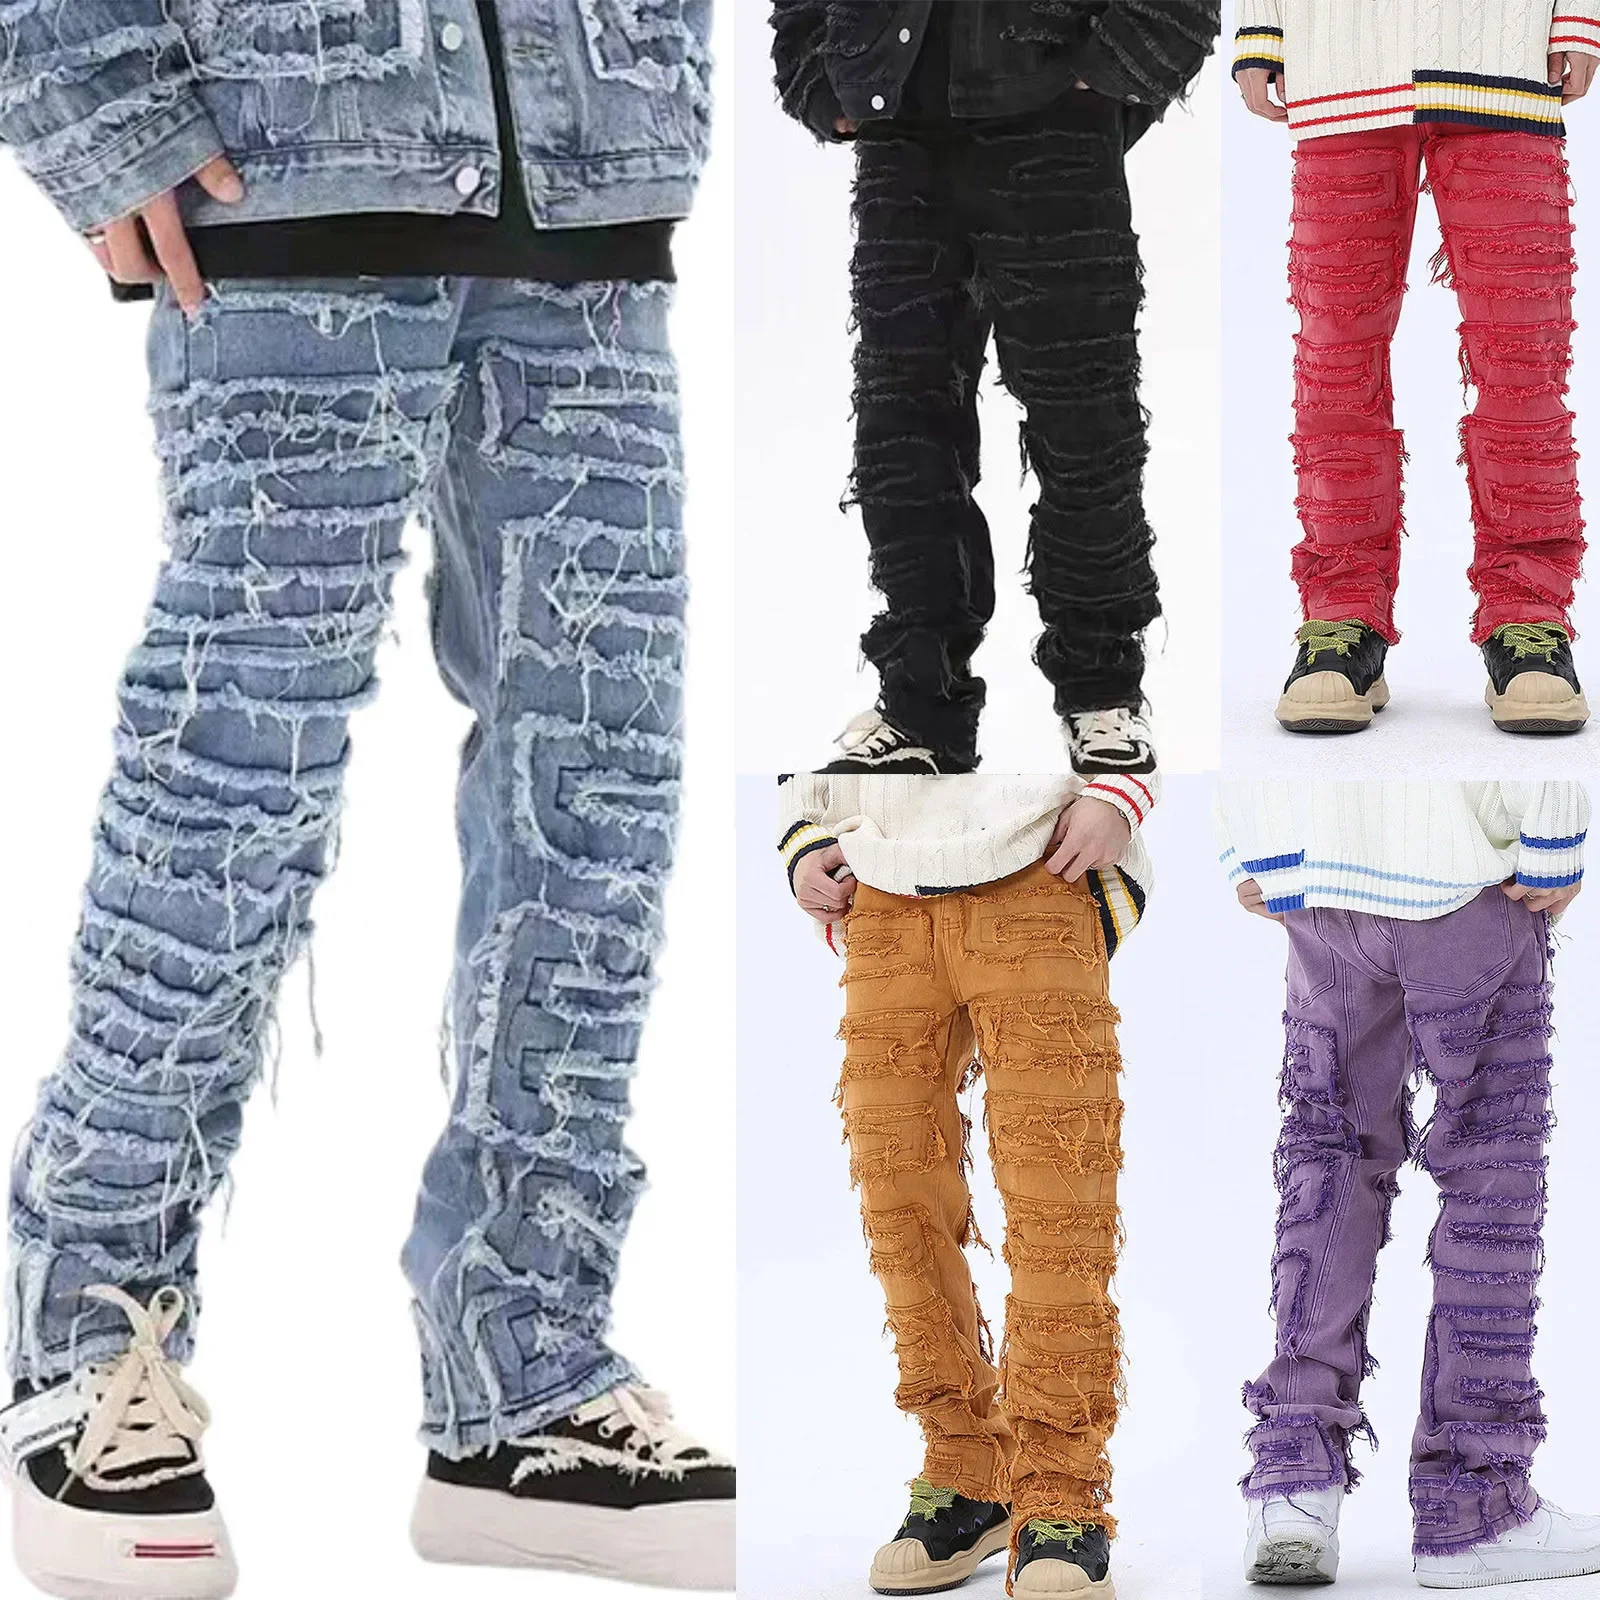 

Мужские джинсы скинни с бахромой в стиле хип-хоп, длинные облегающие штаны из денима в стиле панк-рок, синие розовые, уличная одежда